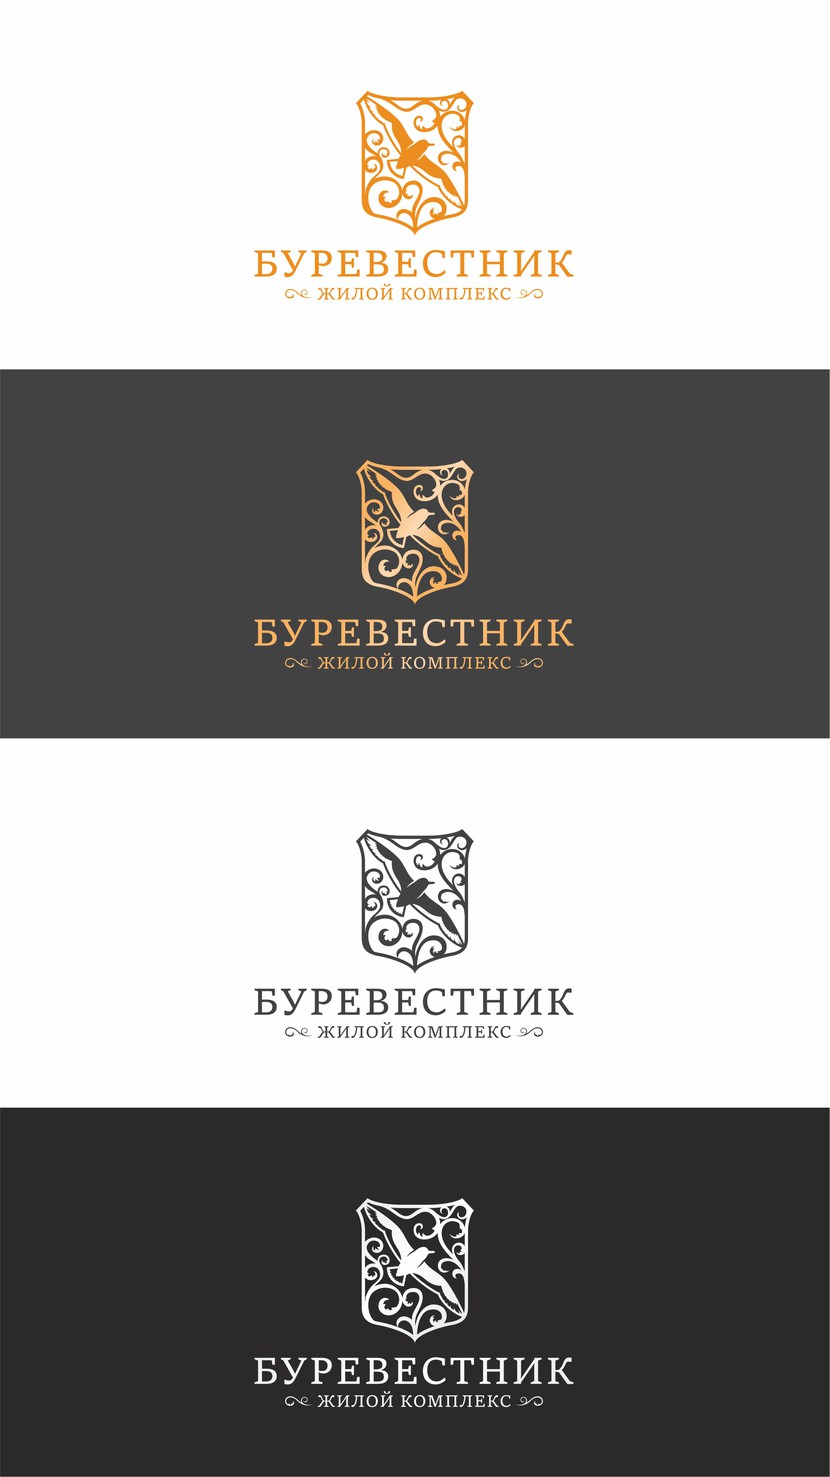 буревестник - Логотип для жилого комплекса бизнес-класса